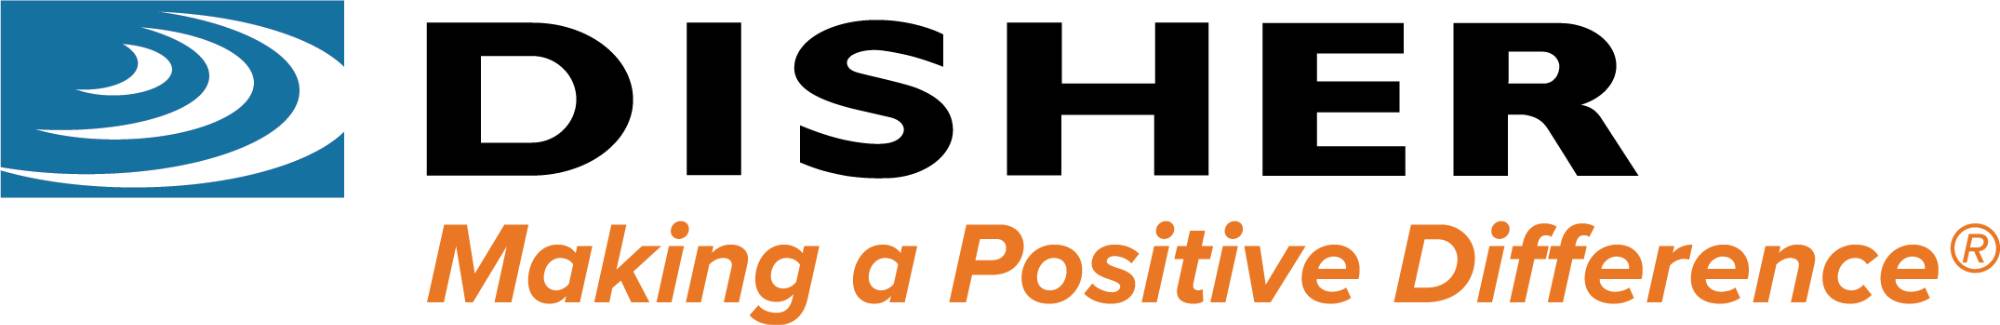 DISHER logo with tagline